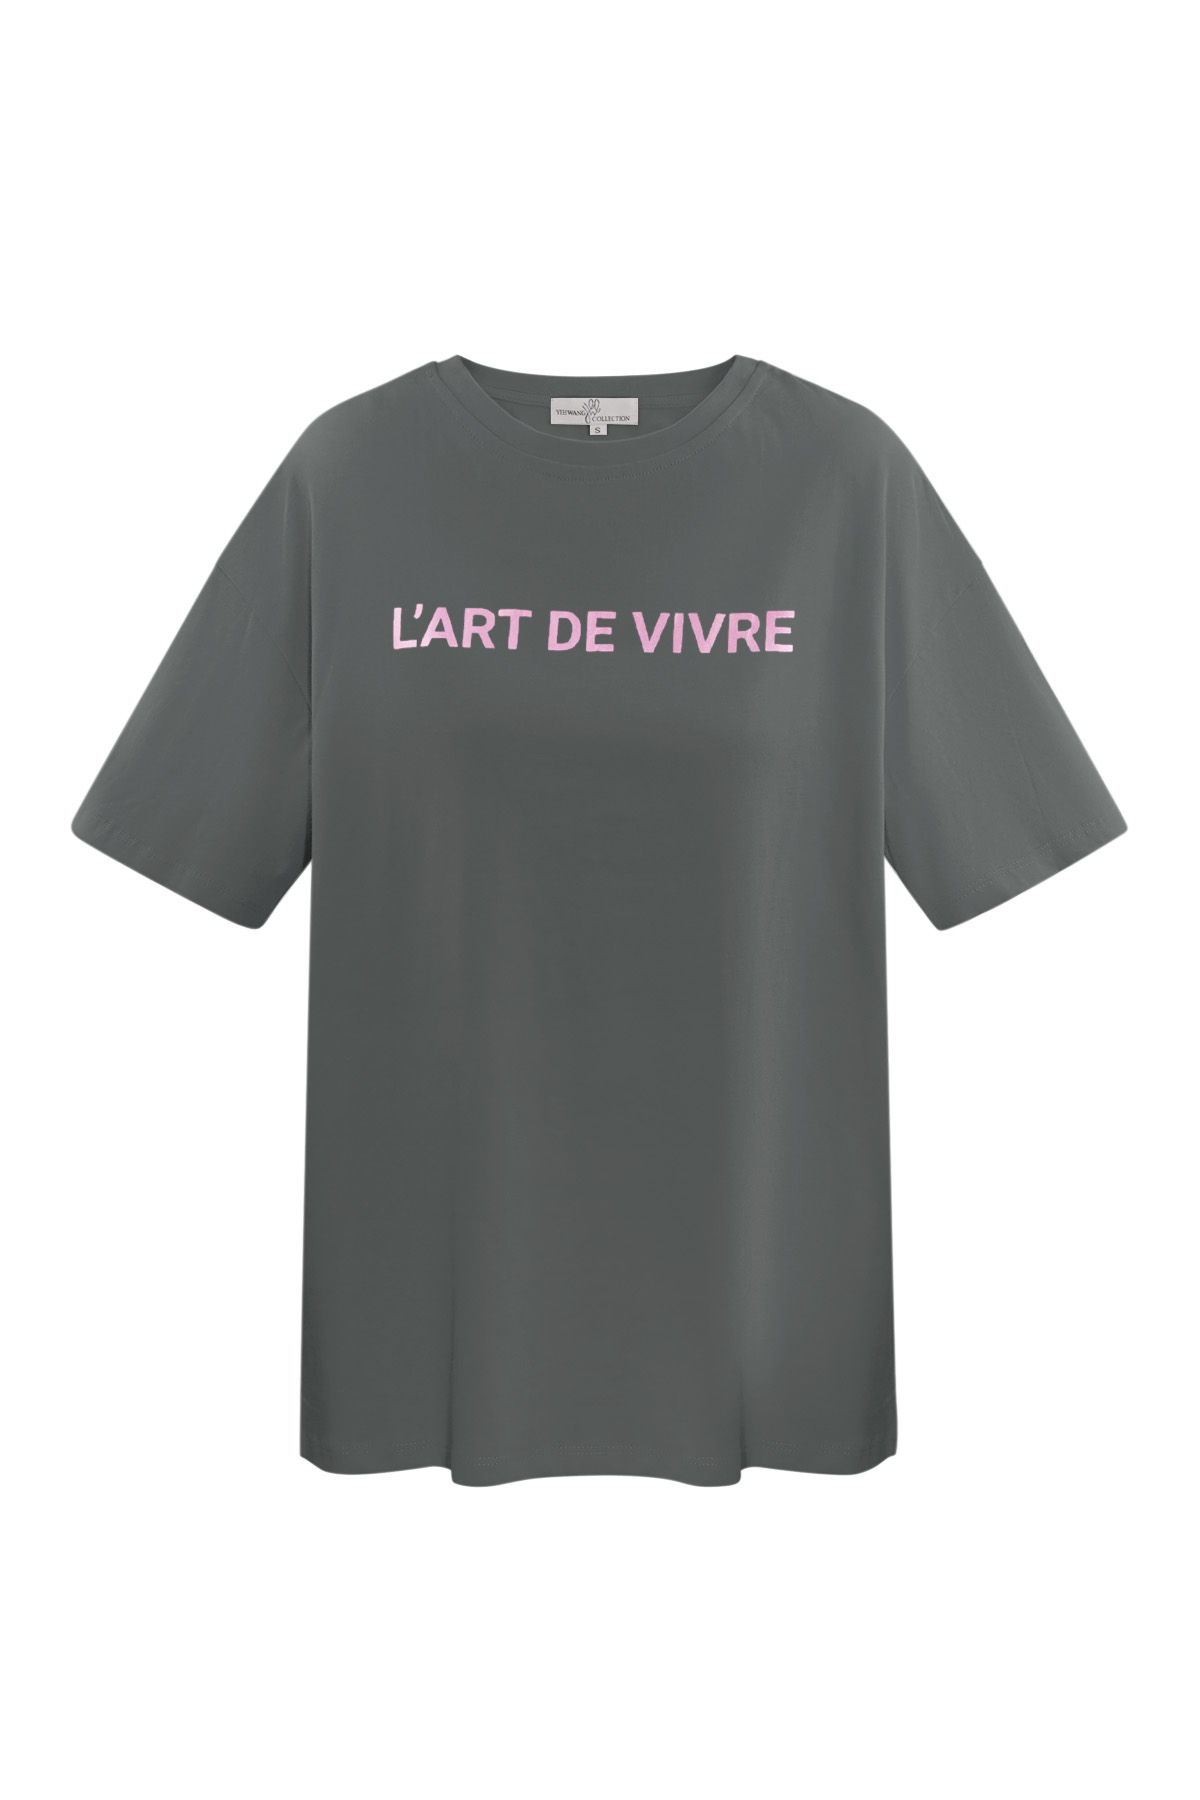 T-shirt l'art de vivre - gris rose